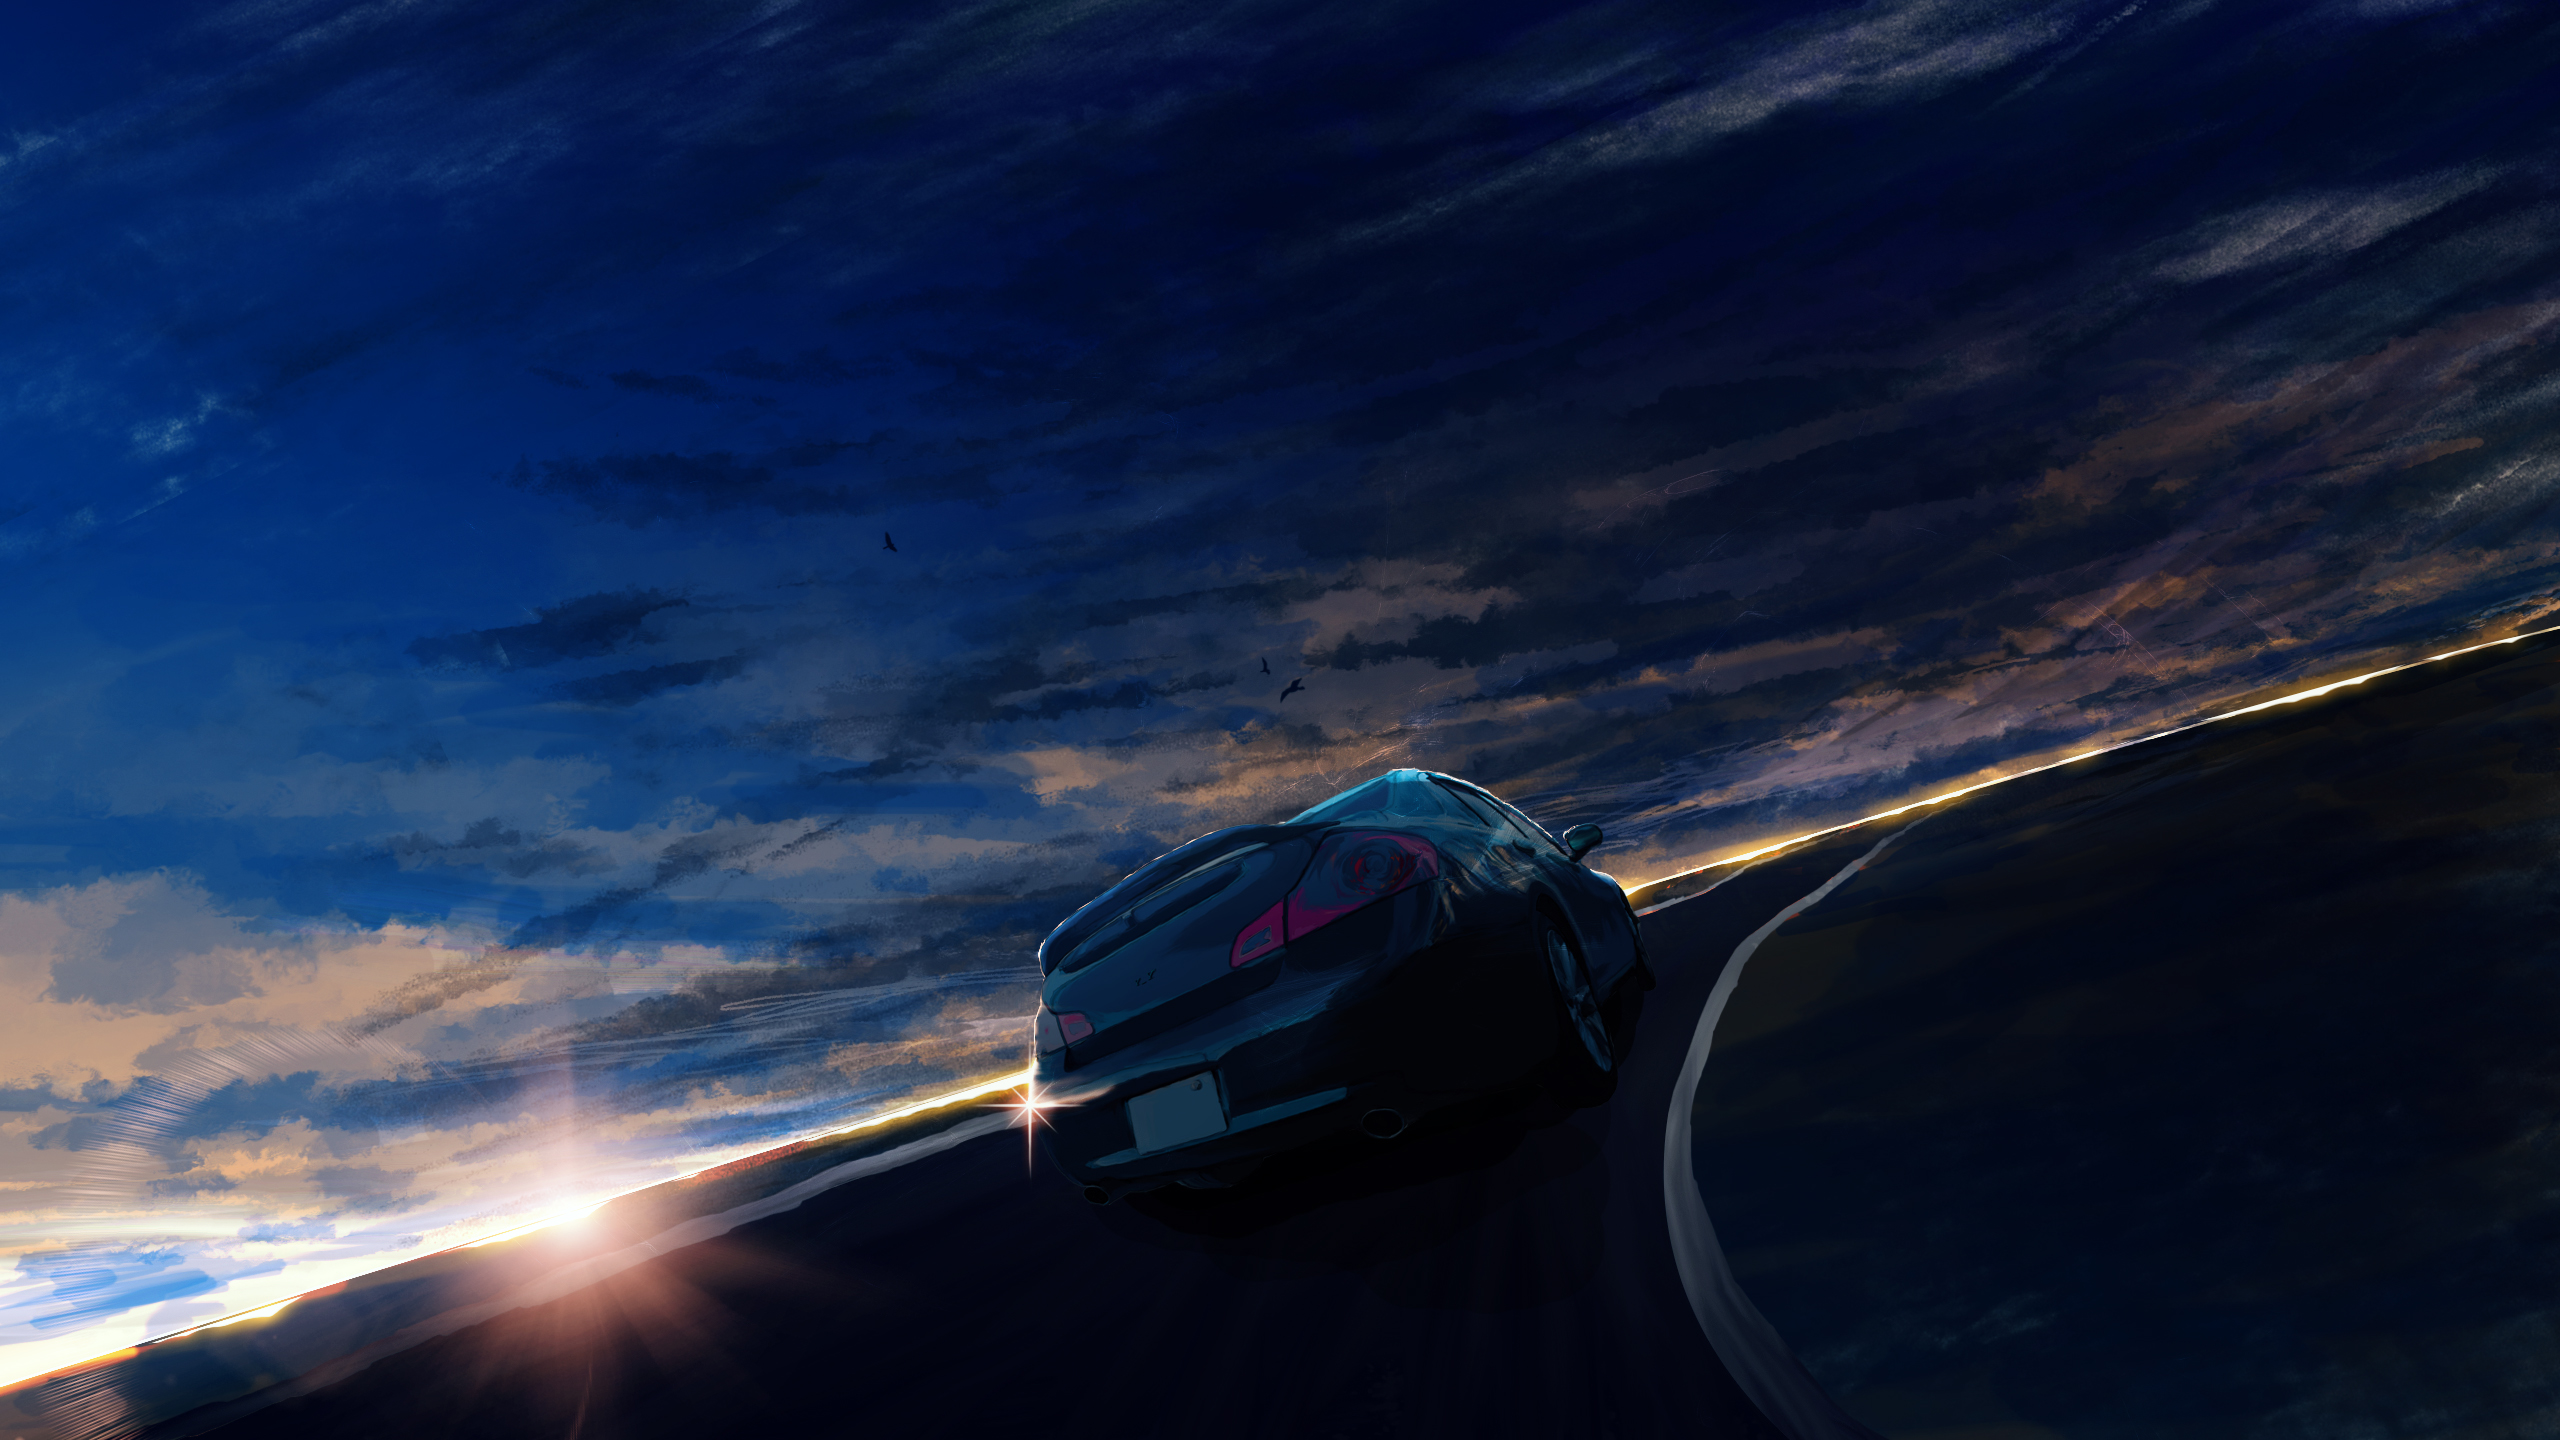 Anime 2560x1440 daybreak frontline car daybreak road vehicle dark sunlight sky